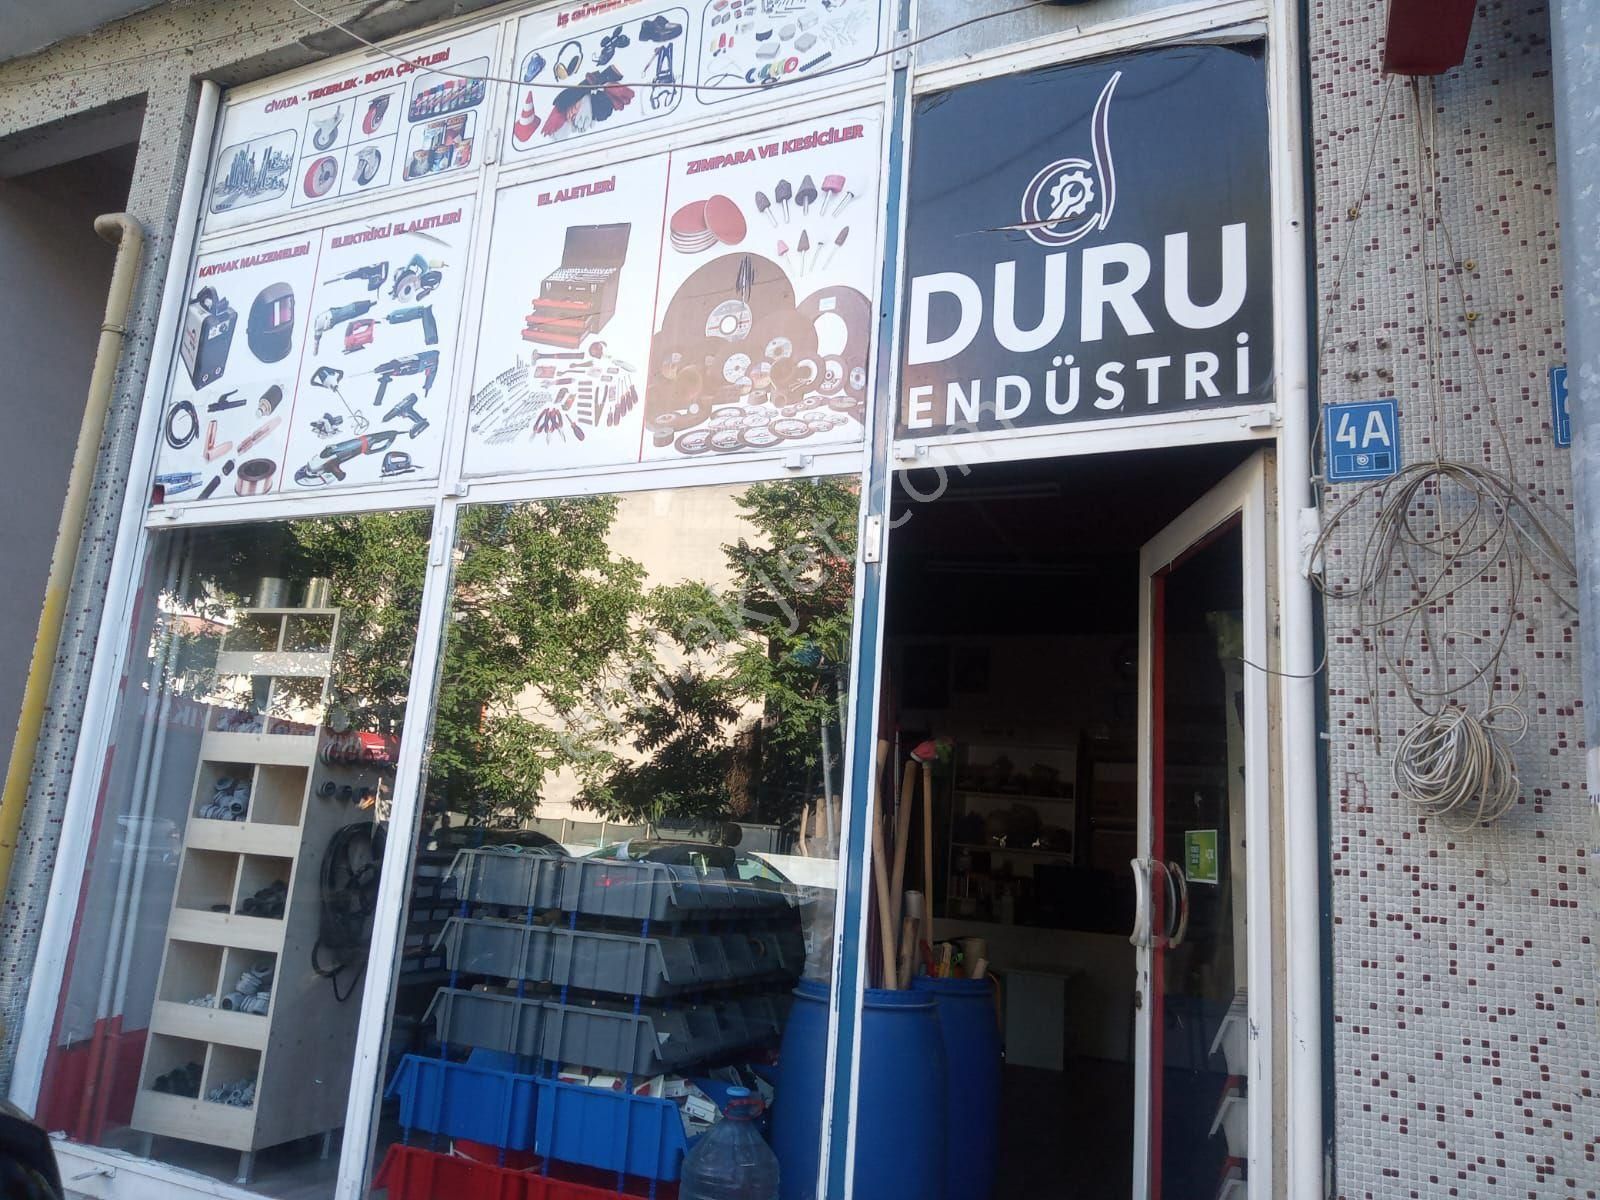 Tekirdağ Çorlu Satılık Dükkan & Mağaza Sahibinden Karakol karşısı Arçelik aralığında düzayak dükkan Acil